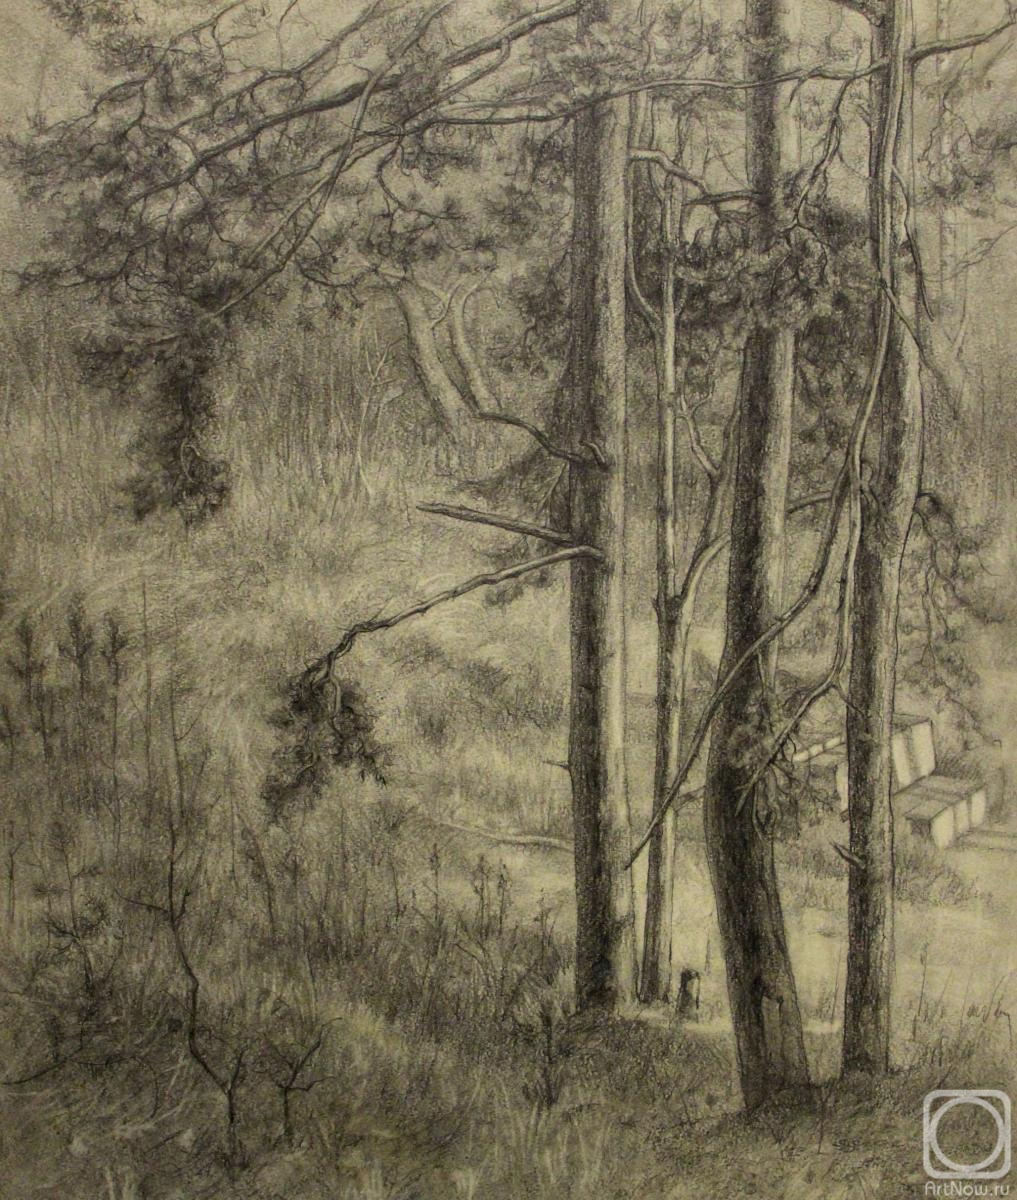 Kurkov Viktor. Pine trees